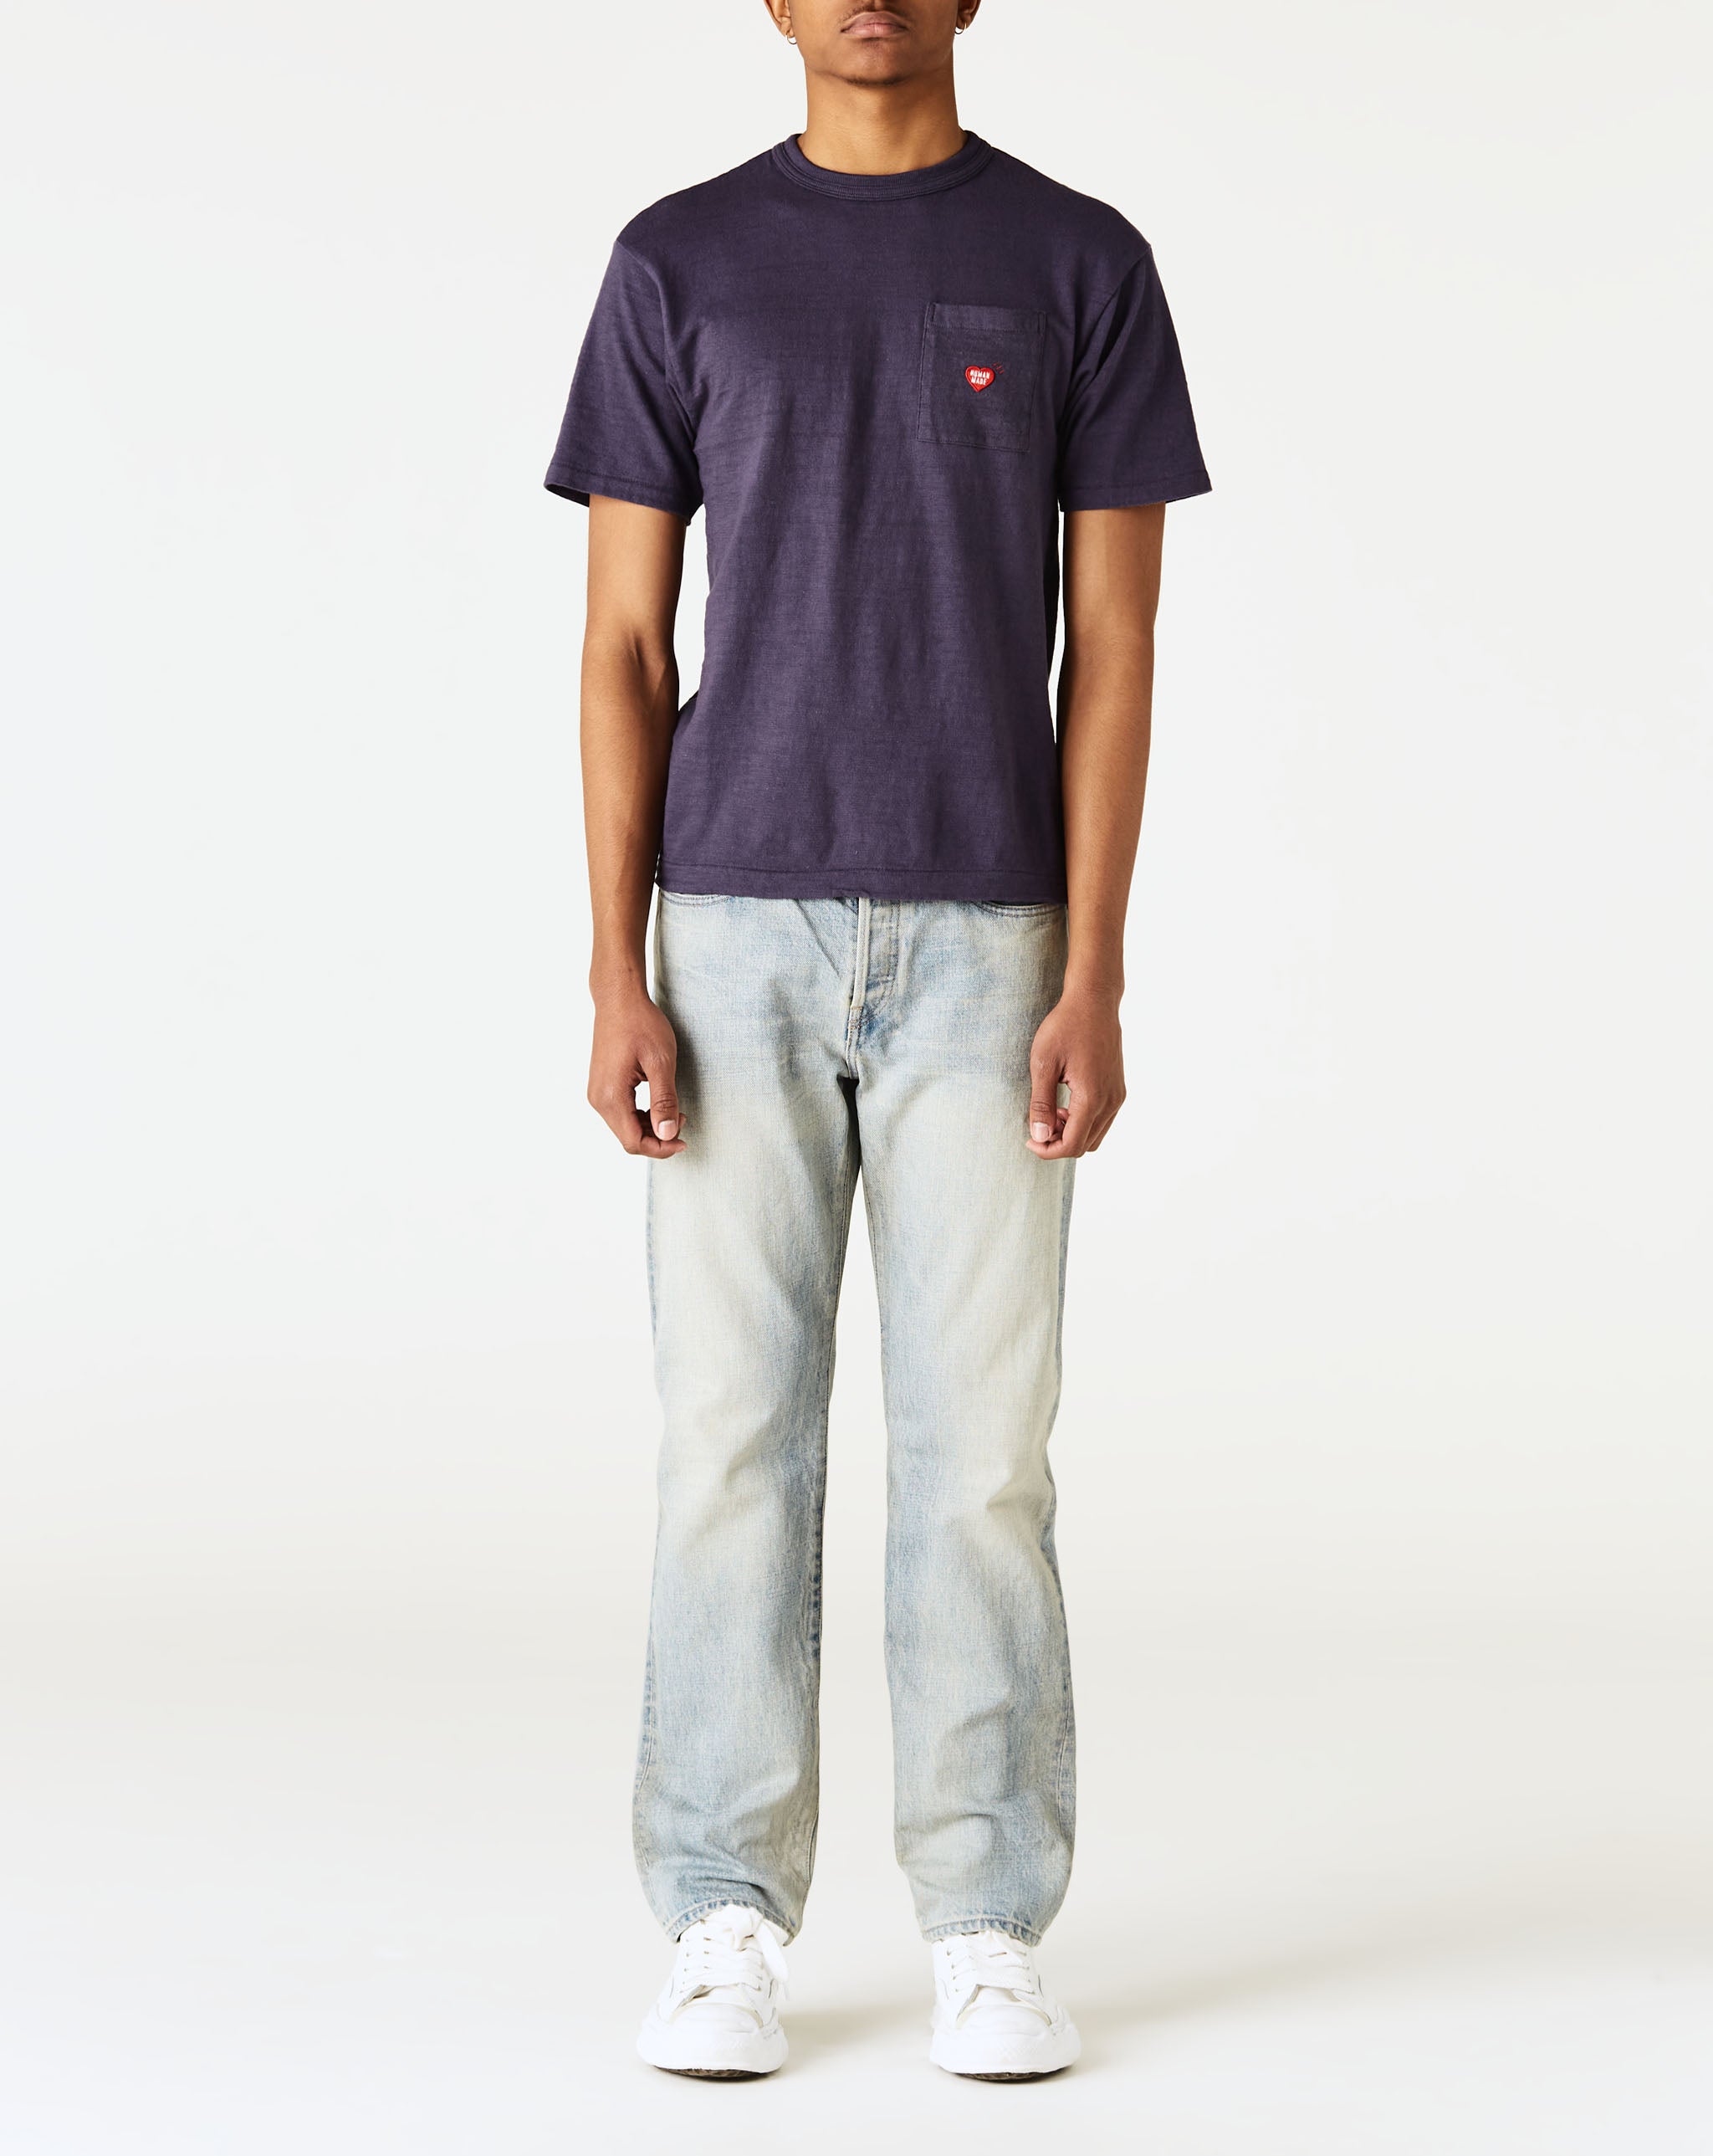 Human Made Pocket T-Shirt #2  - Cheap Cerbe Jordan outlet